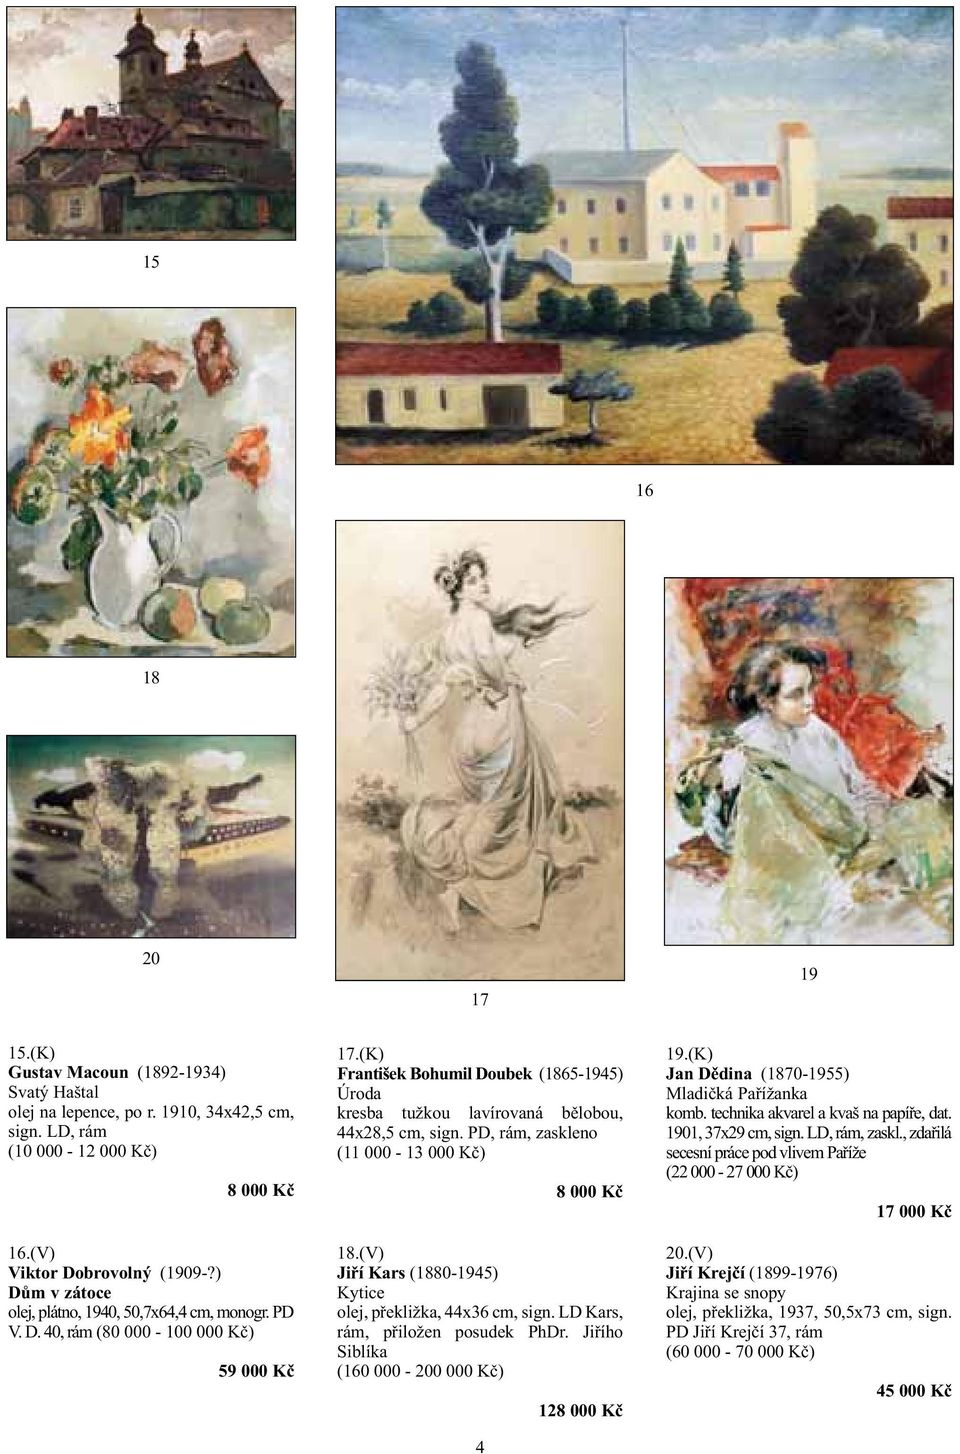 (K) František Bohumil Doubek (1865-1945) Úroda kresba tužkou lavírovaná bělobou, 44x28,5 cm, sign. PD, rám, zaskleno (11 000-13 000 Kč) 4 8 000 Kč 18.